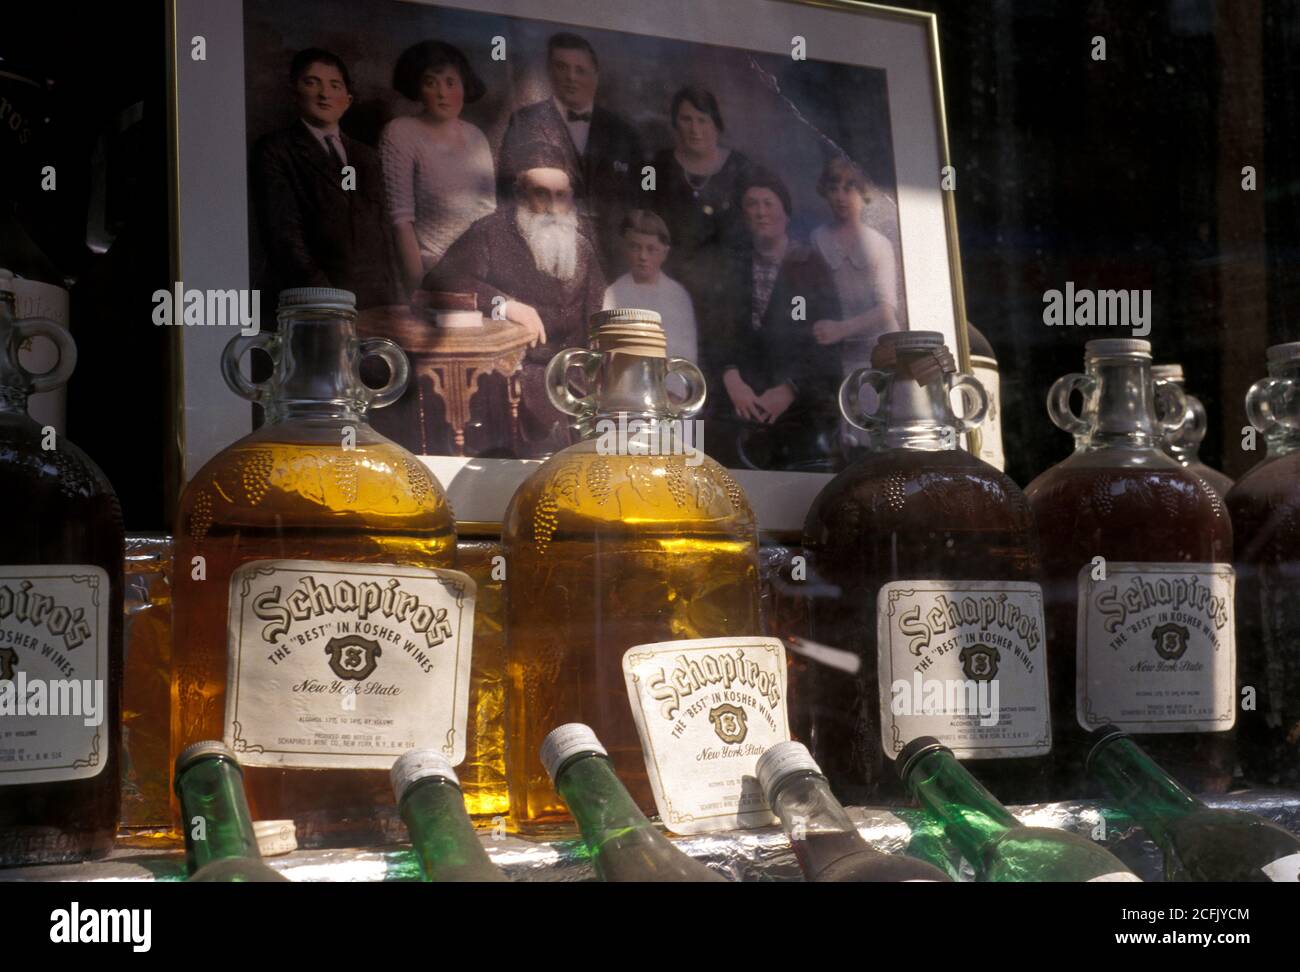 New York, NY, USA. Schapiro’s storefront displaying family photo and Kosher wine. Stock Photo